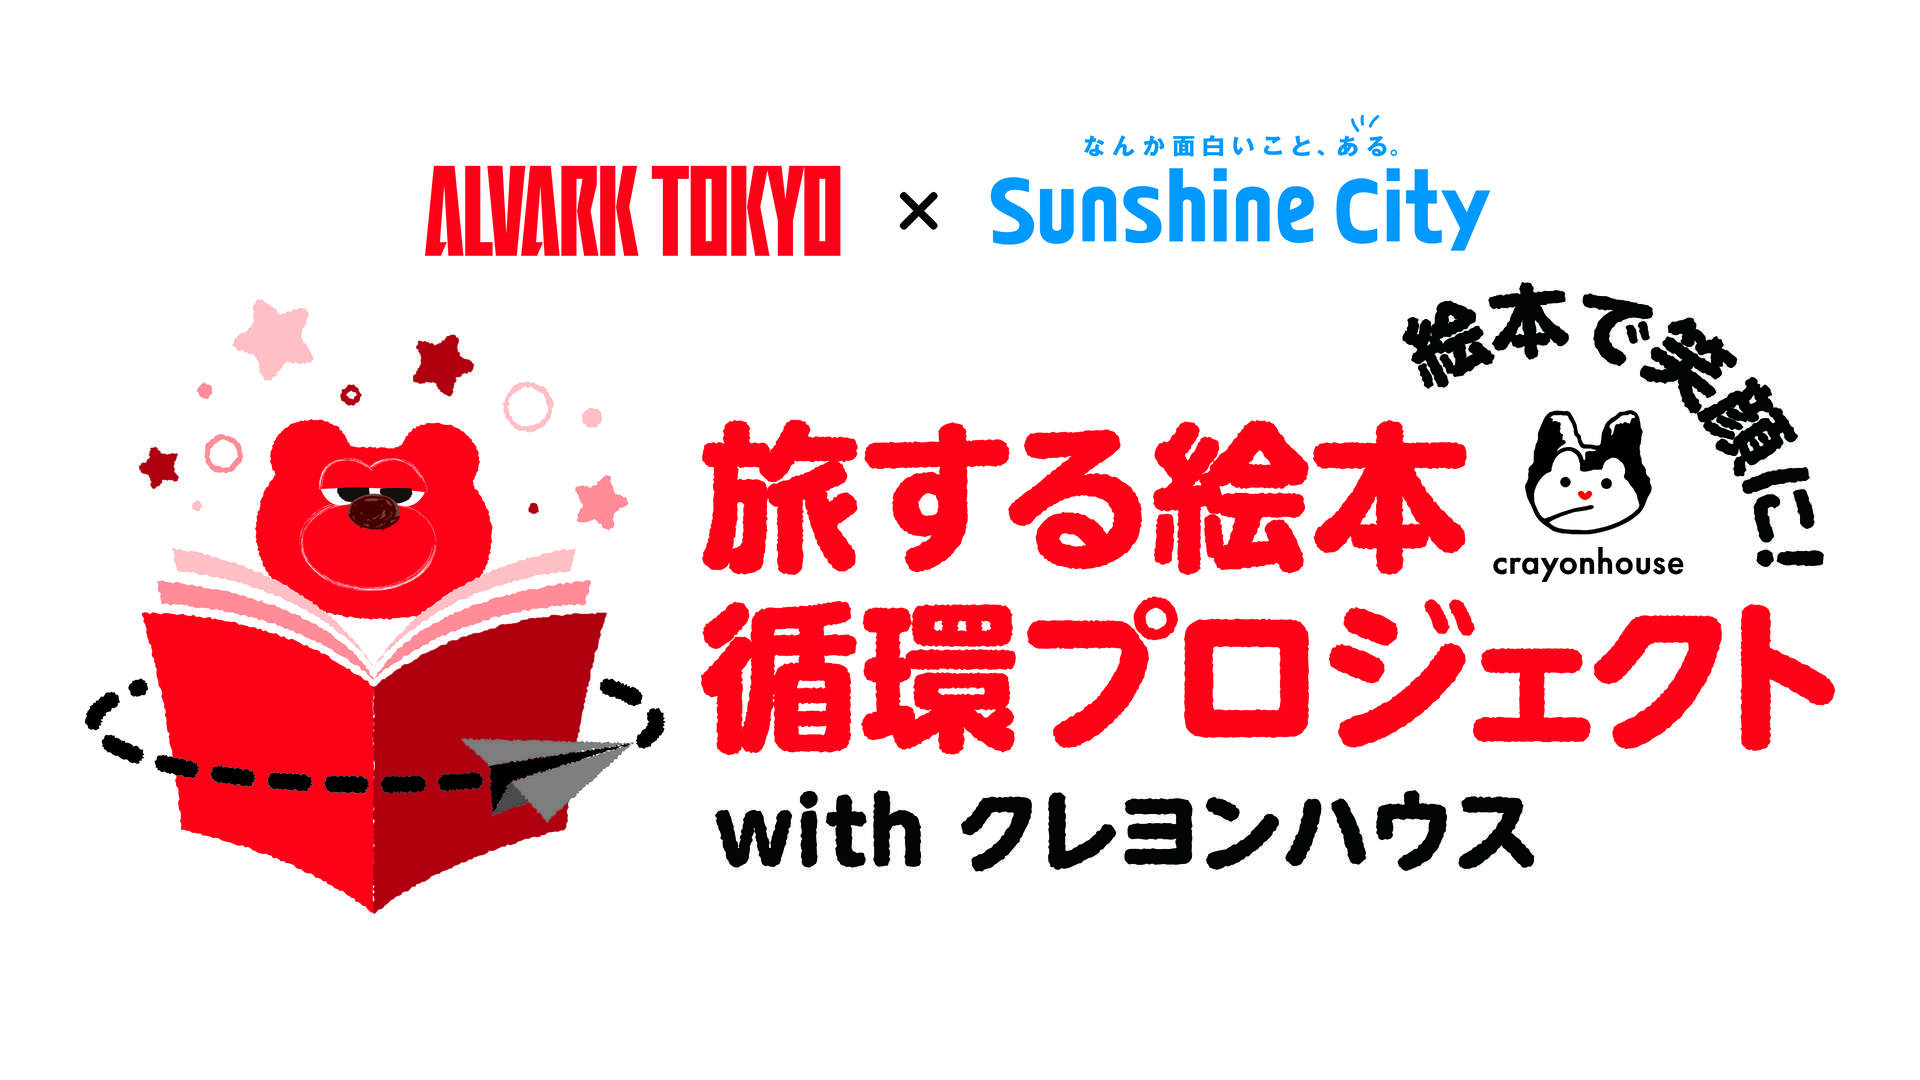 アルバルク東京×サンシャインシティ　旅する絵本循環プロジェクトwith クレヨンハウス	